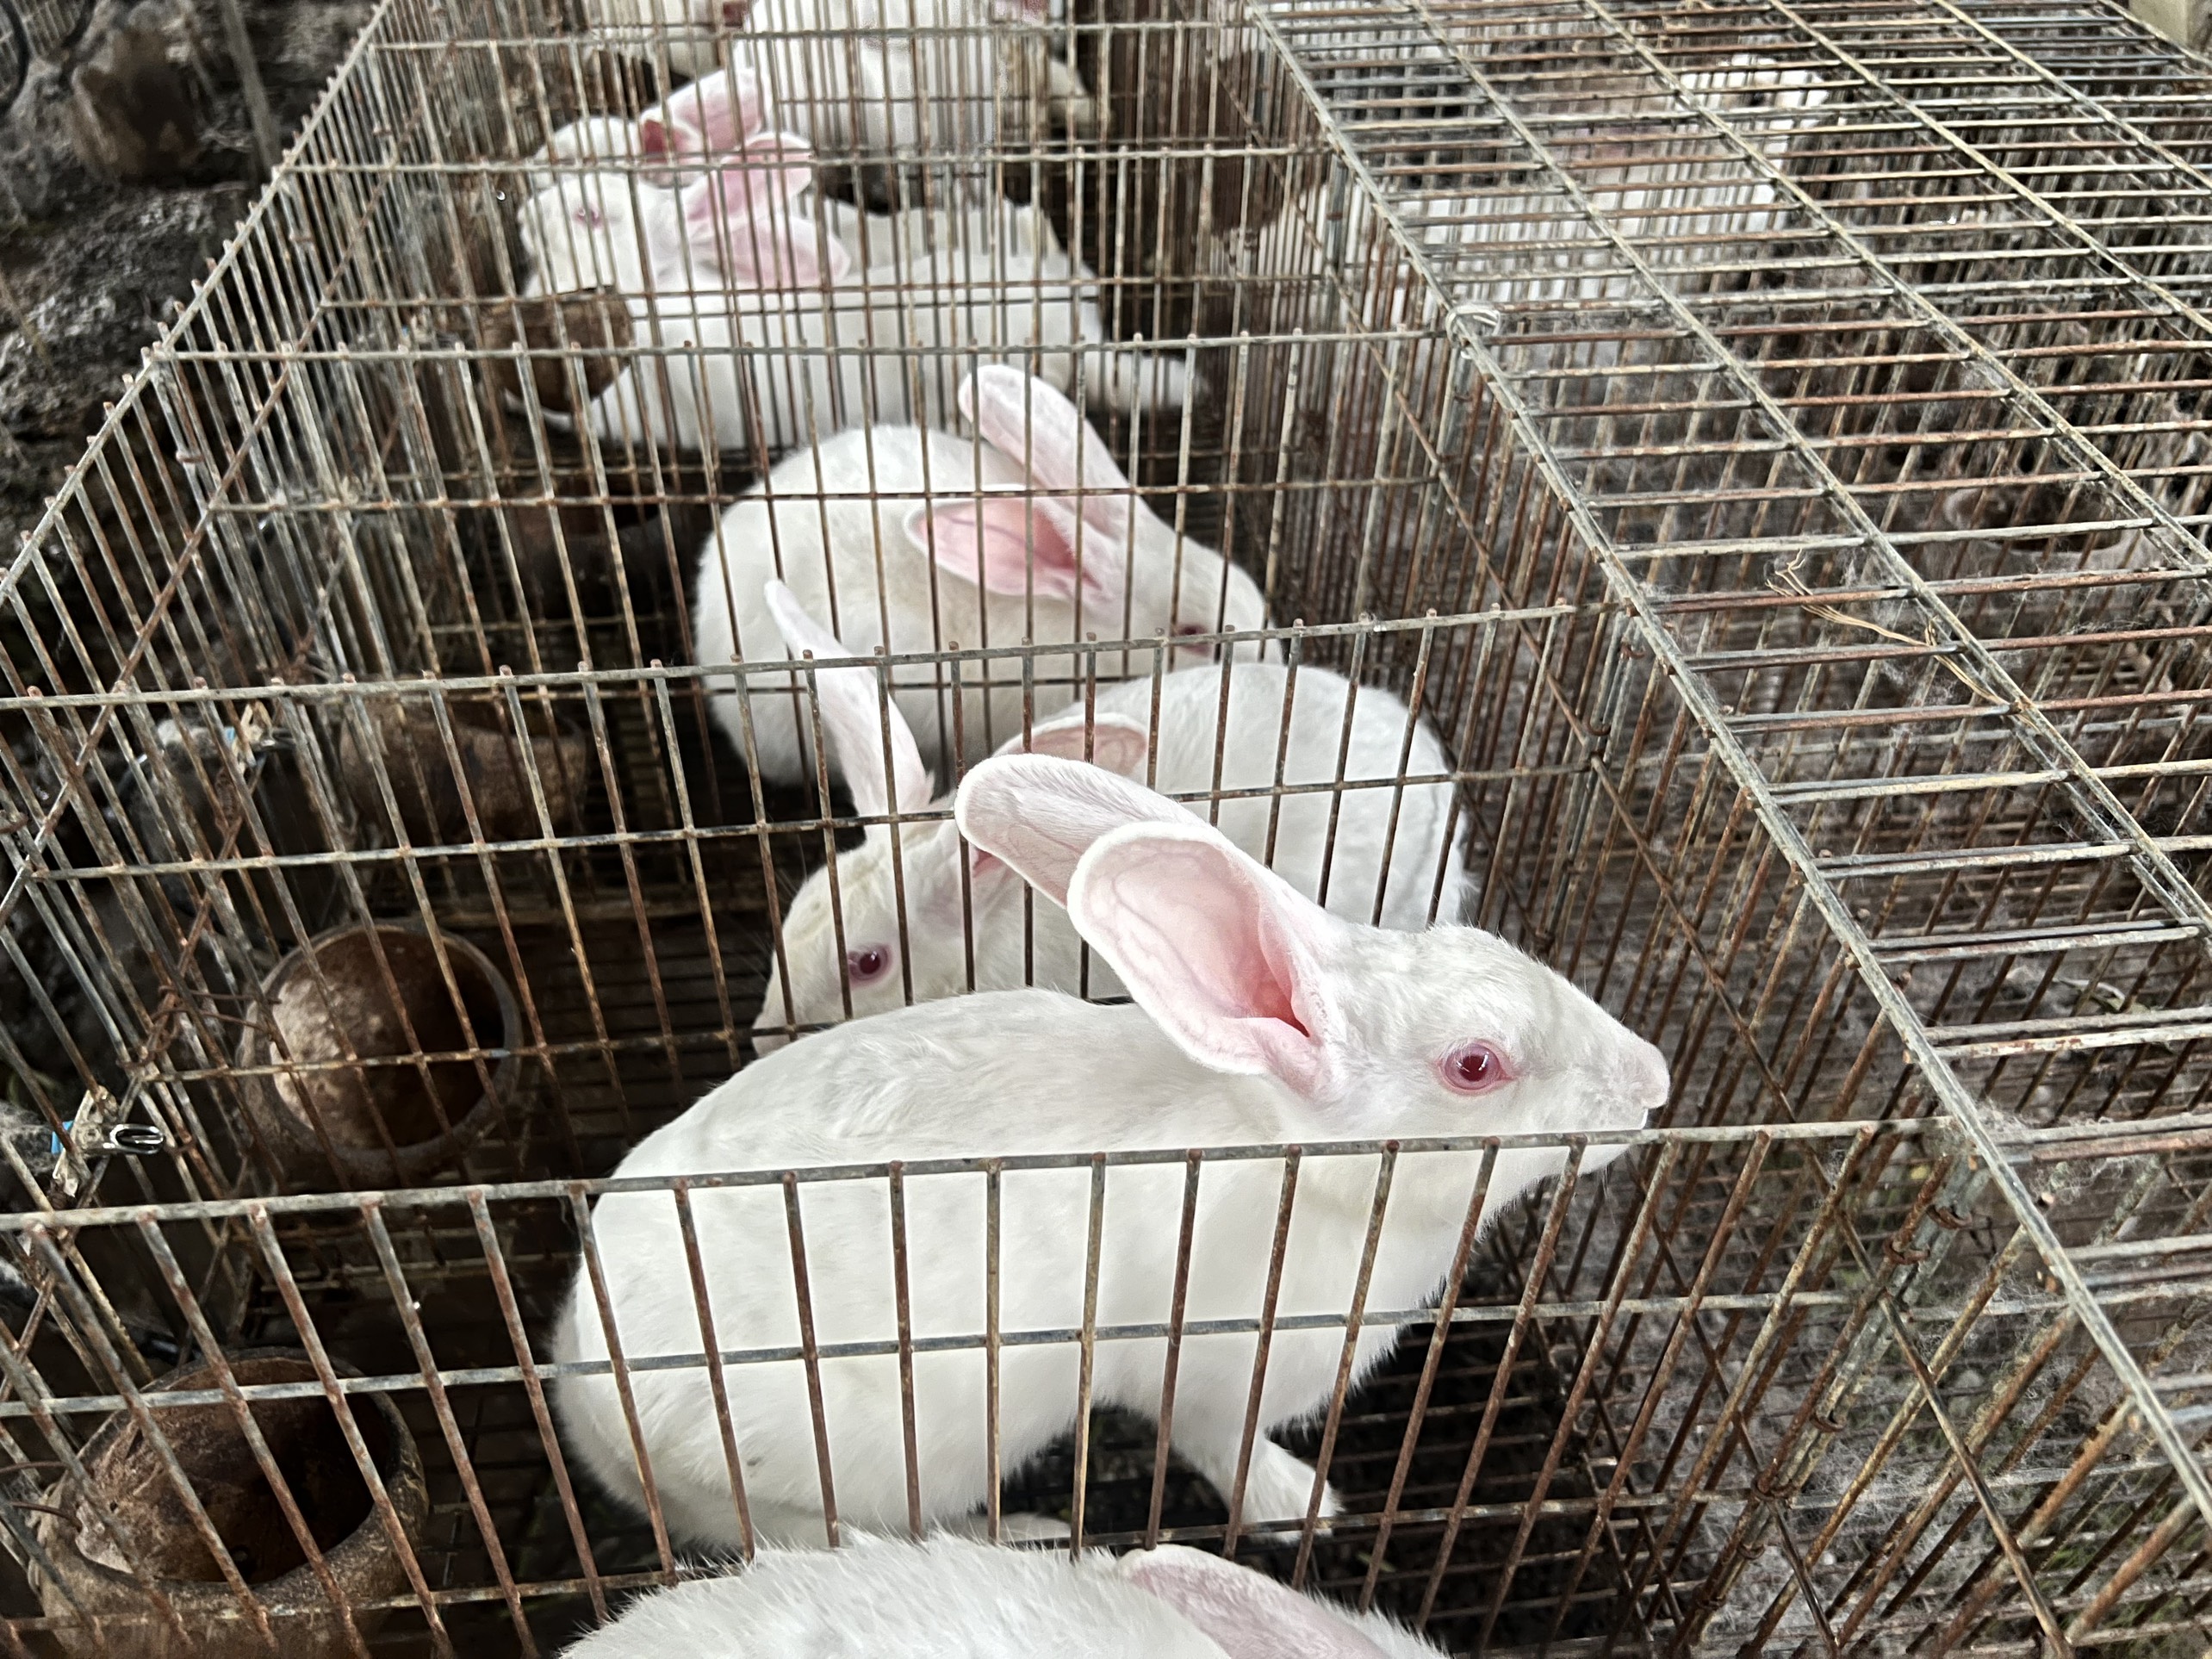 Mô hình trang trại nuôi thỏ khép kín  Dungluoicom